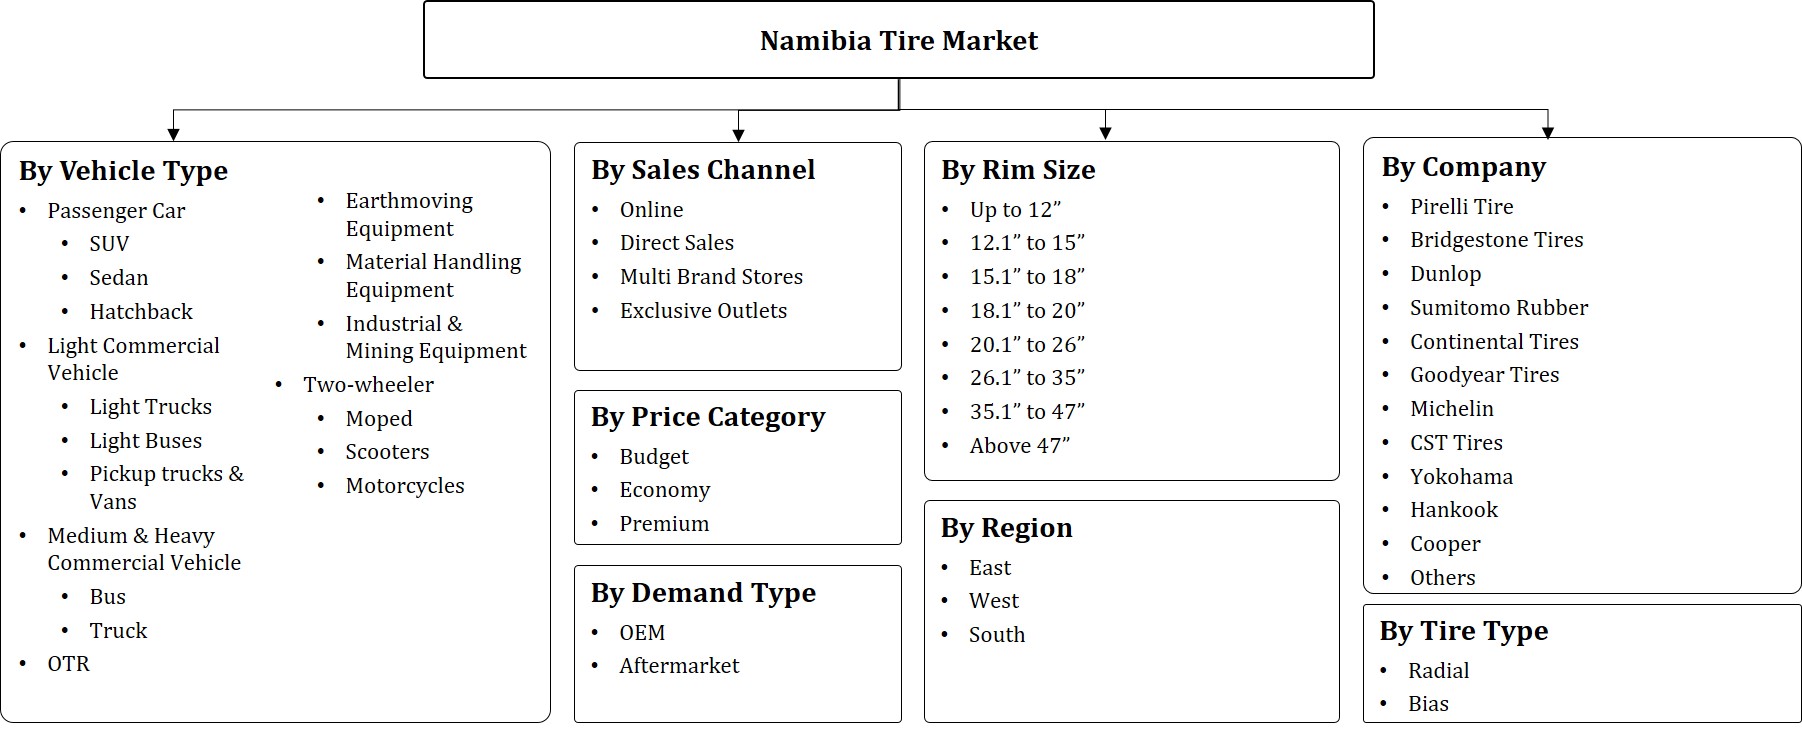 Namibia Tire Market Segmentation